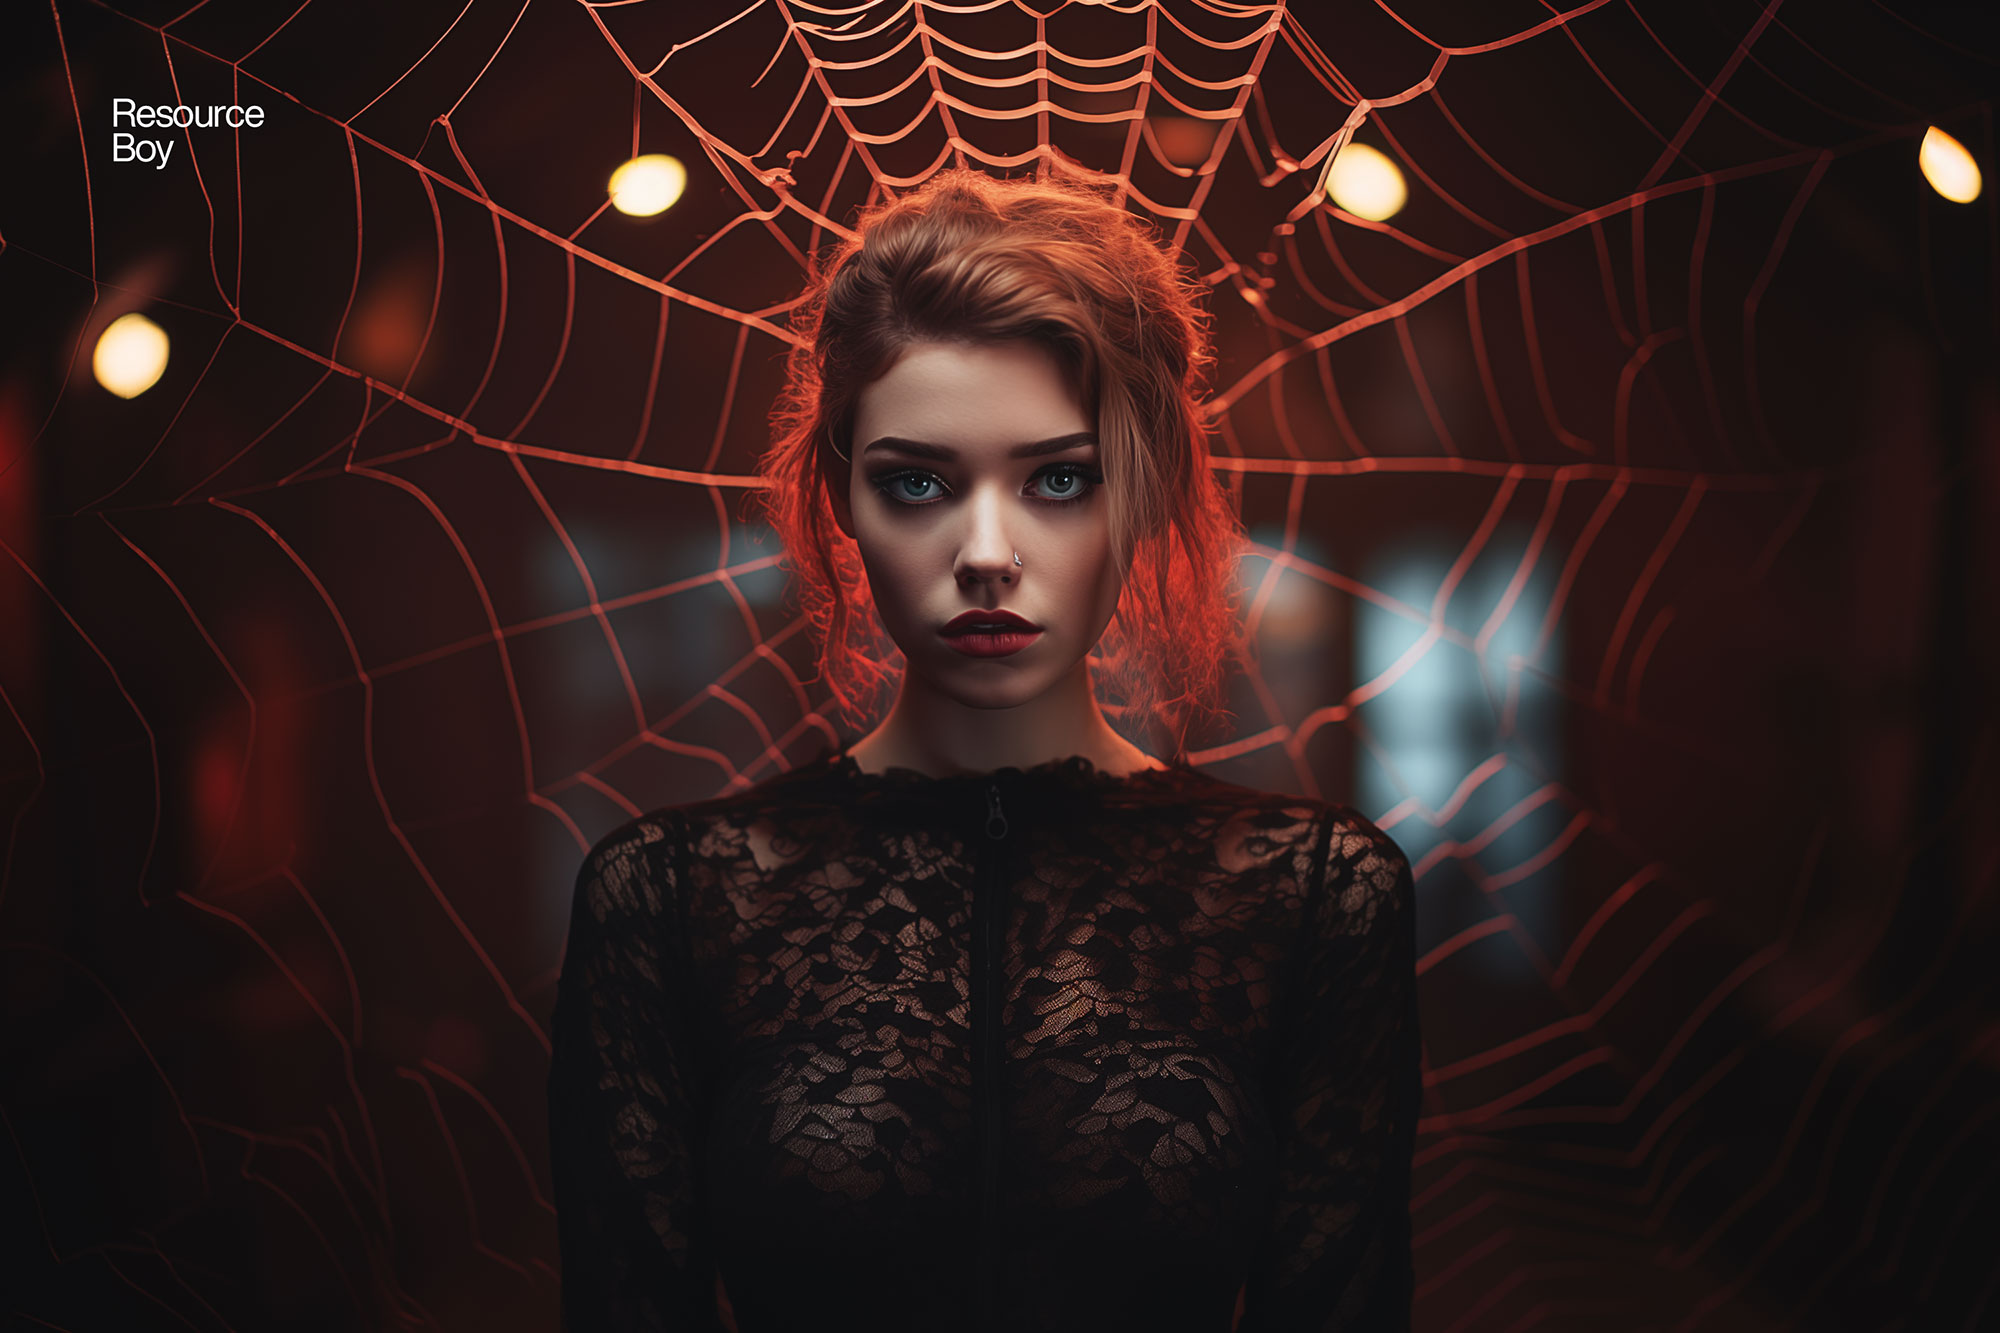 200 Free Spider Web Photoshop Brushes